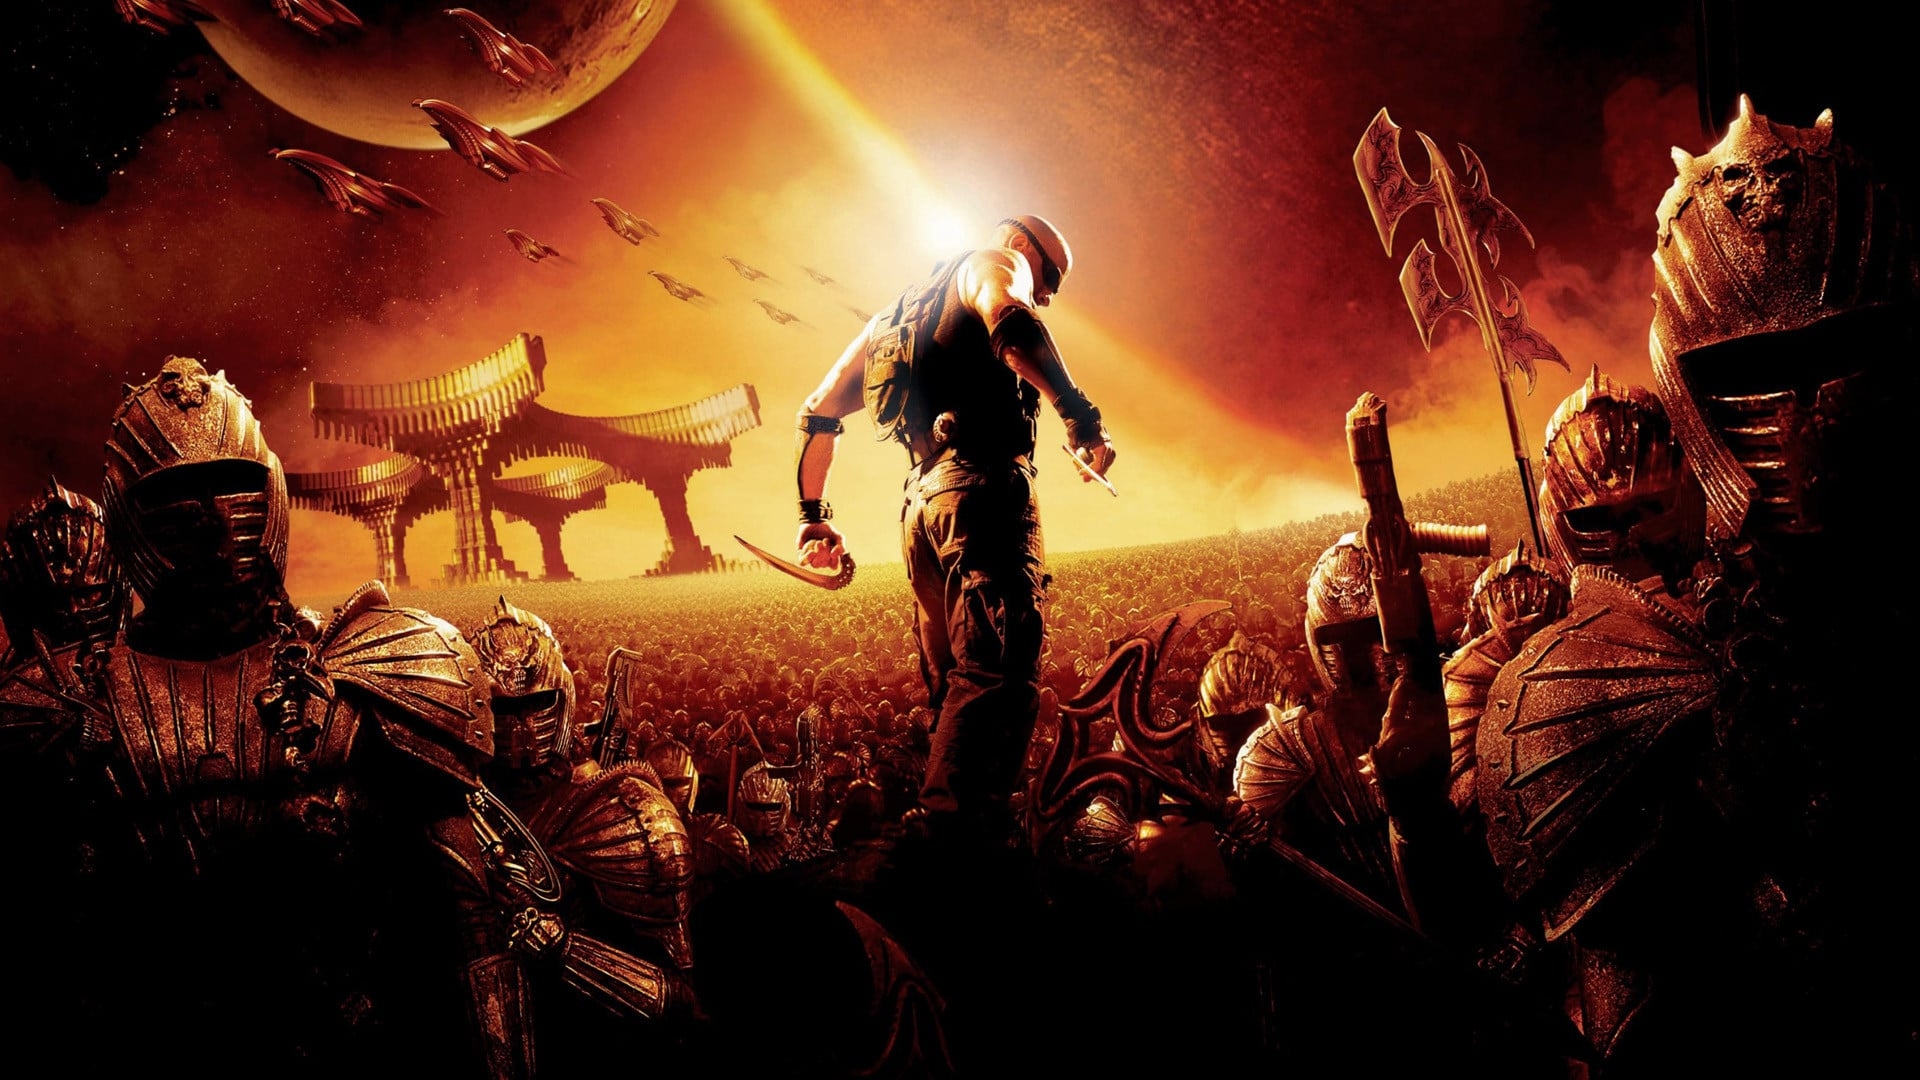 The Chronicles of Riddick (The Chronicles of Riddick)